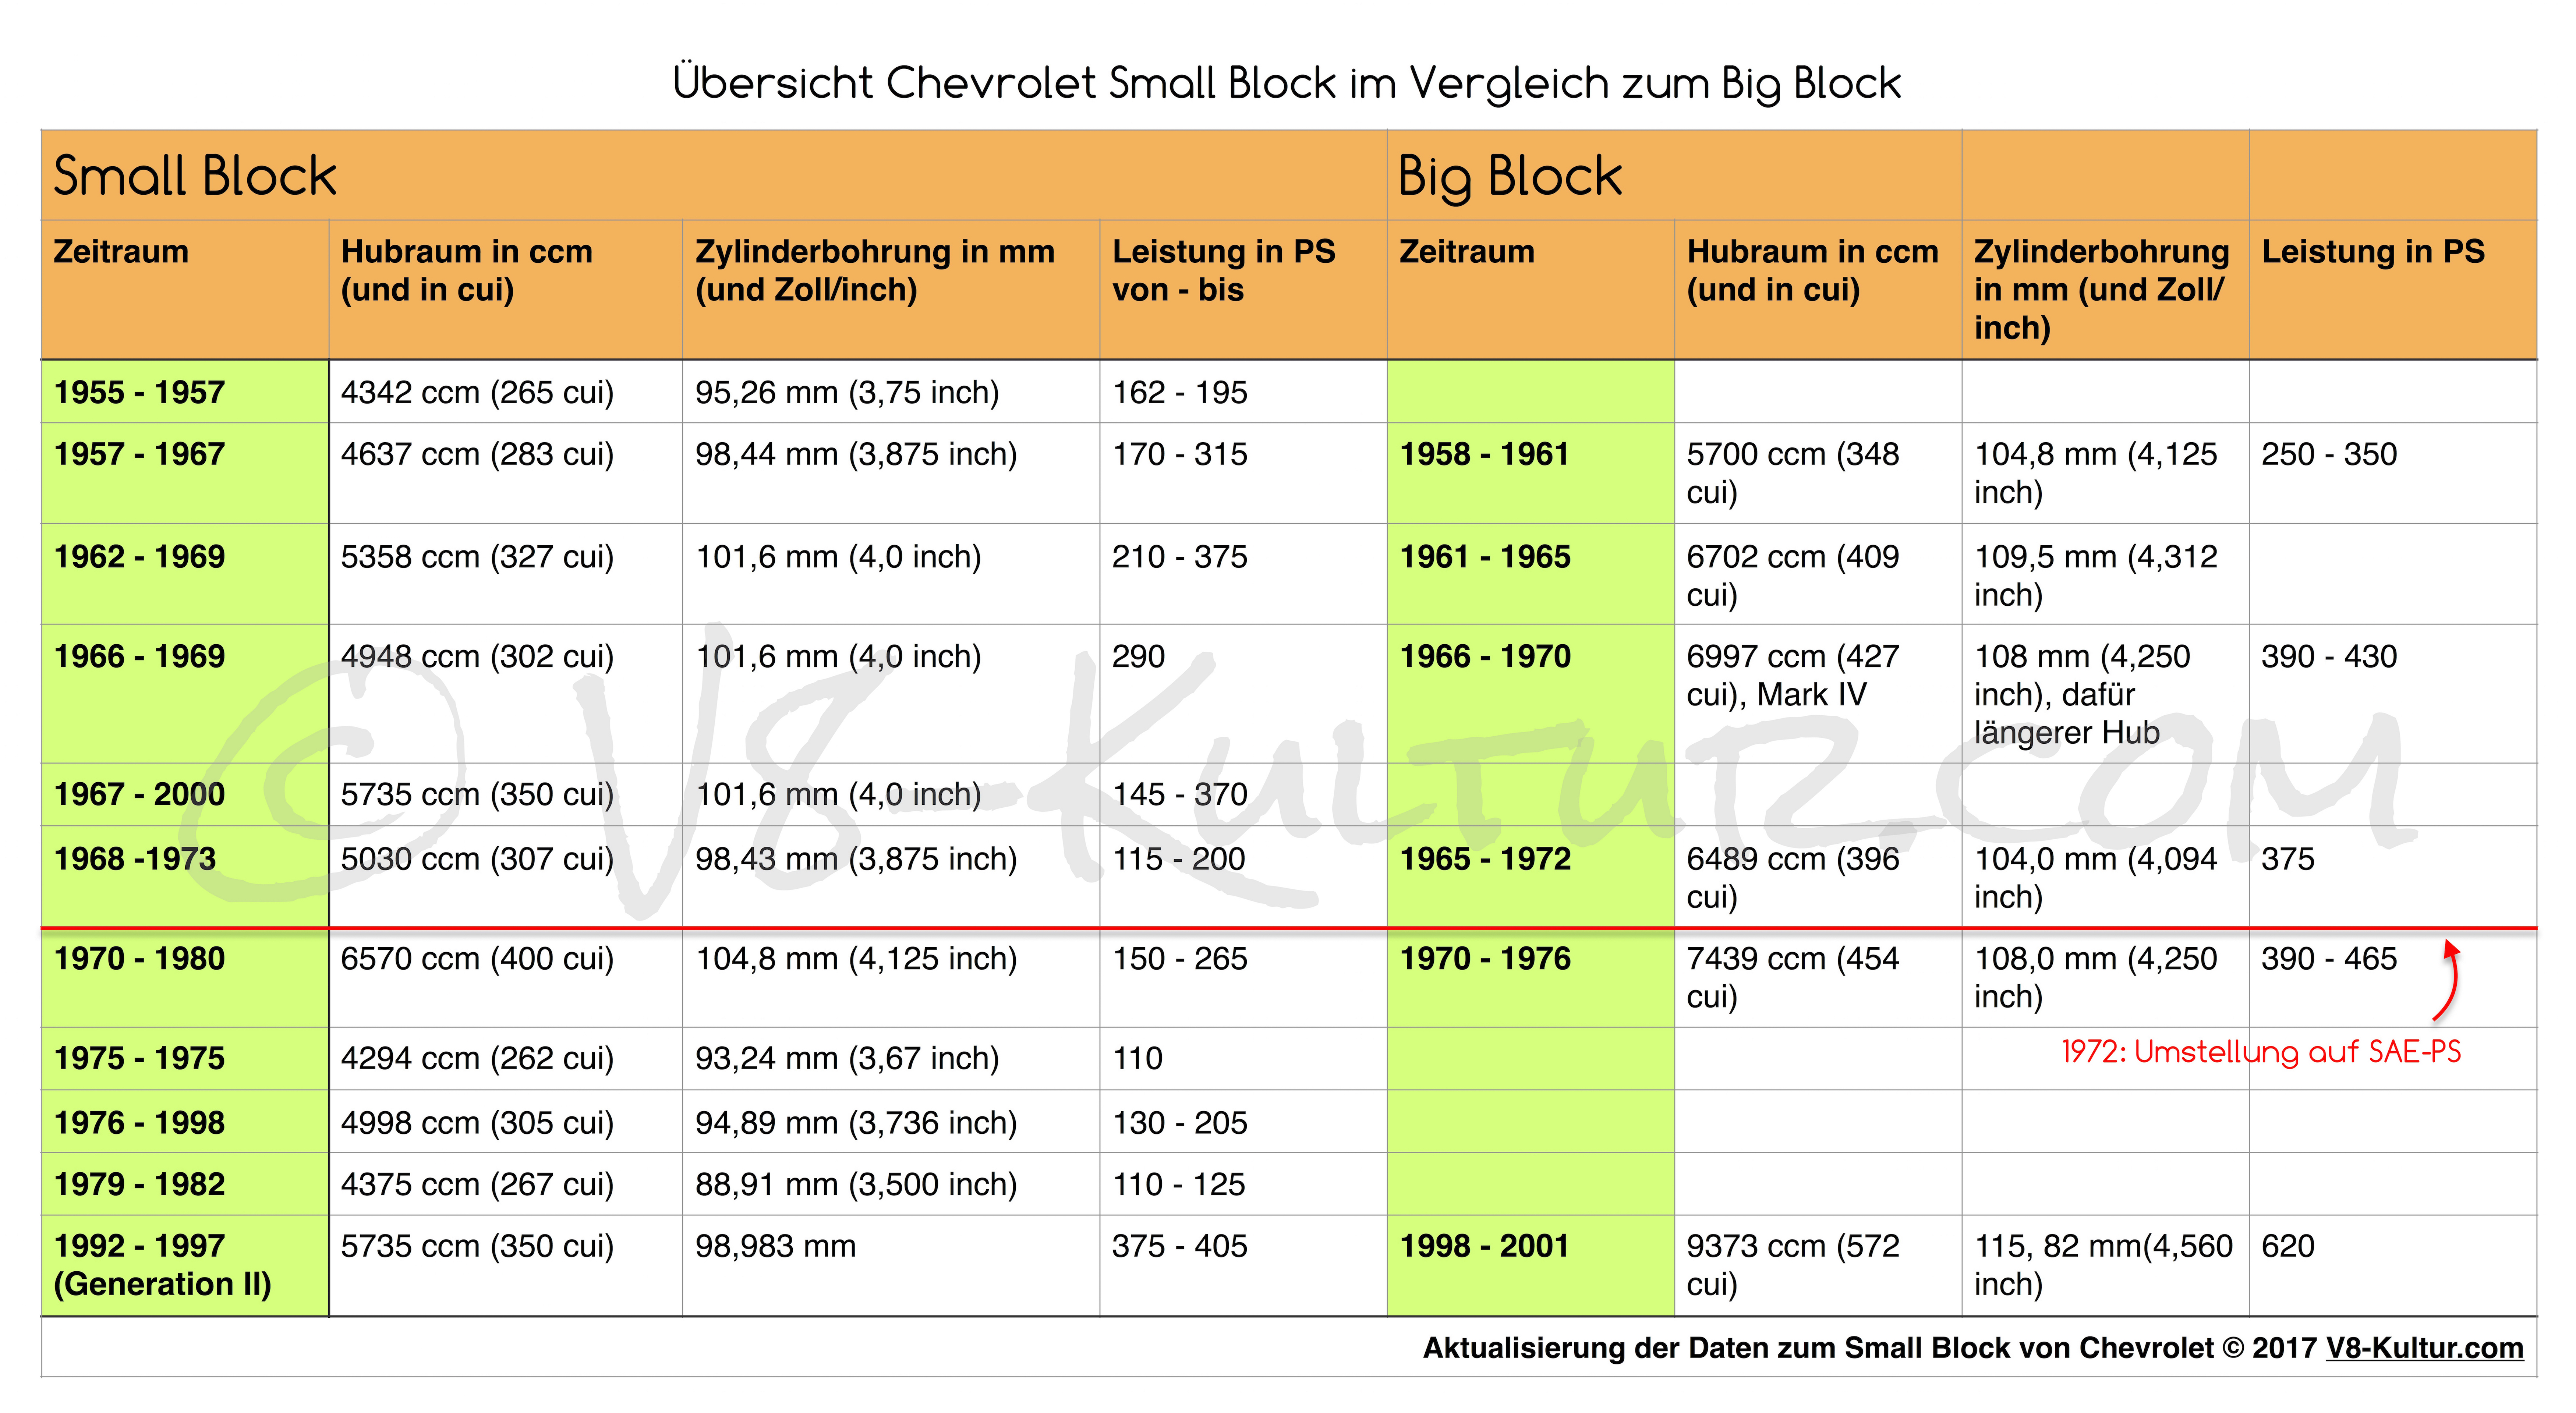 Unterschiede zwischen Small Block und Big Block von Chevrolet